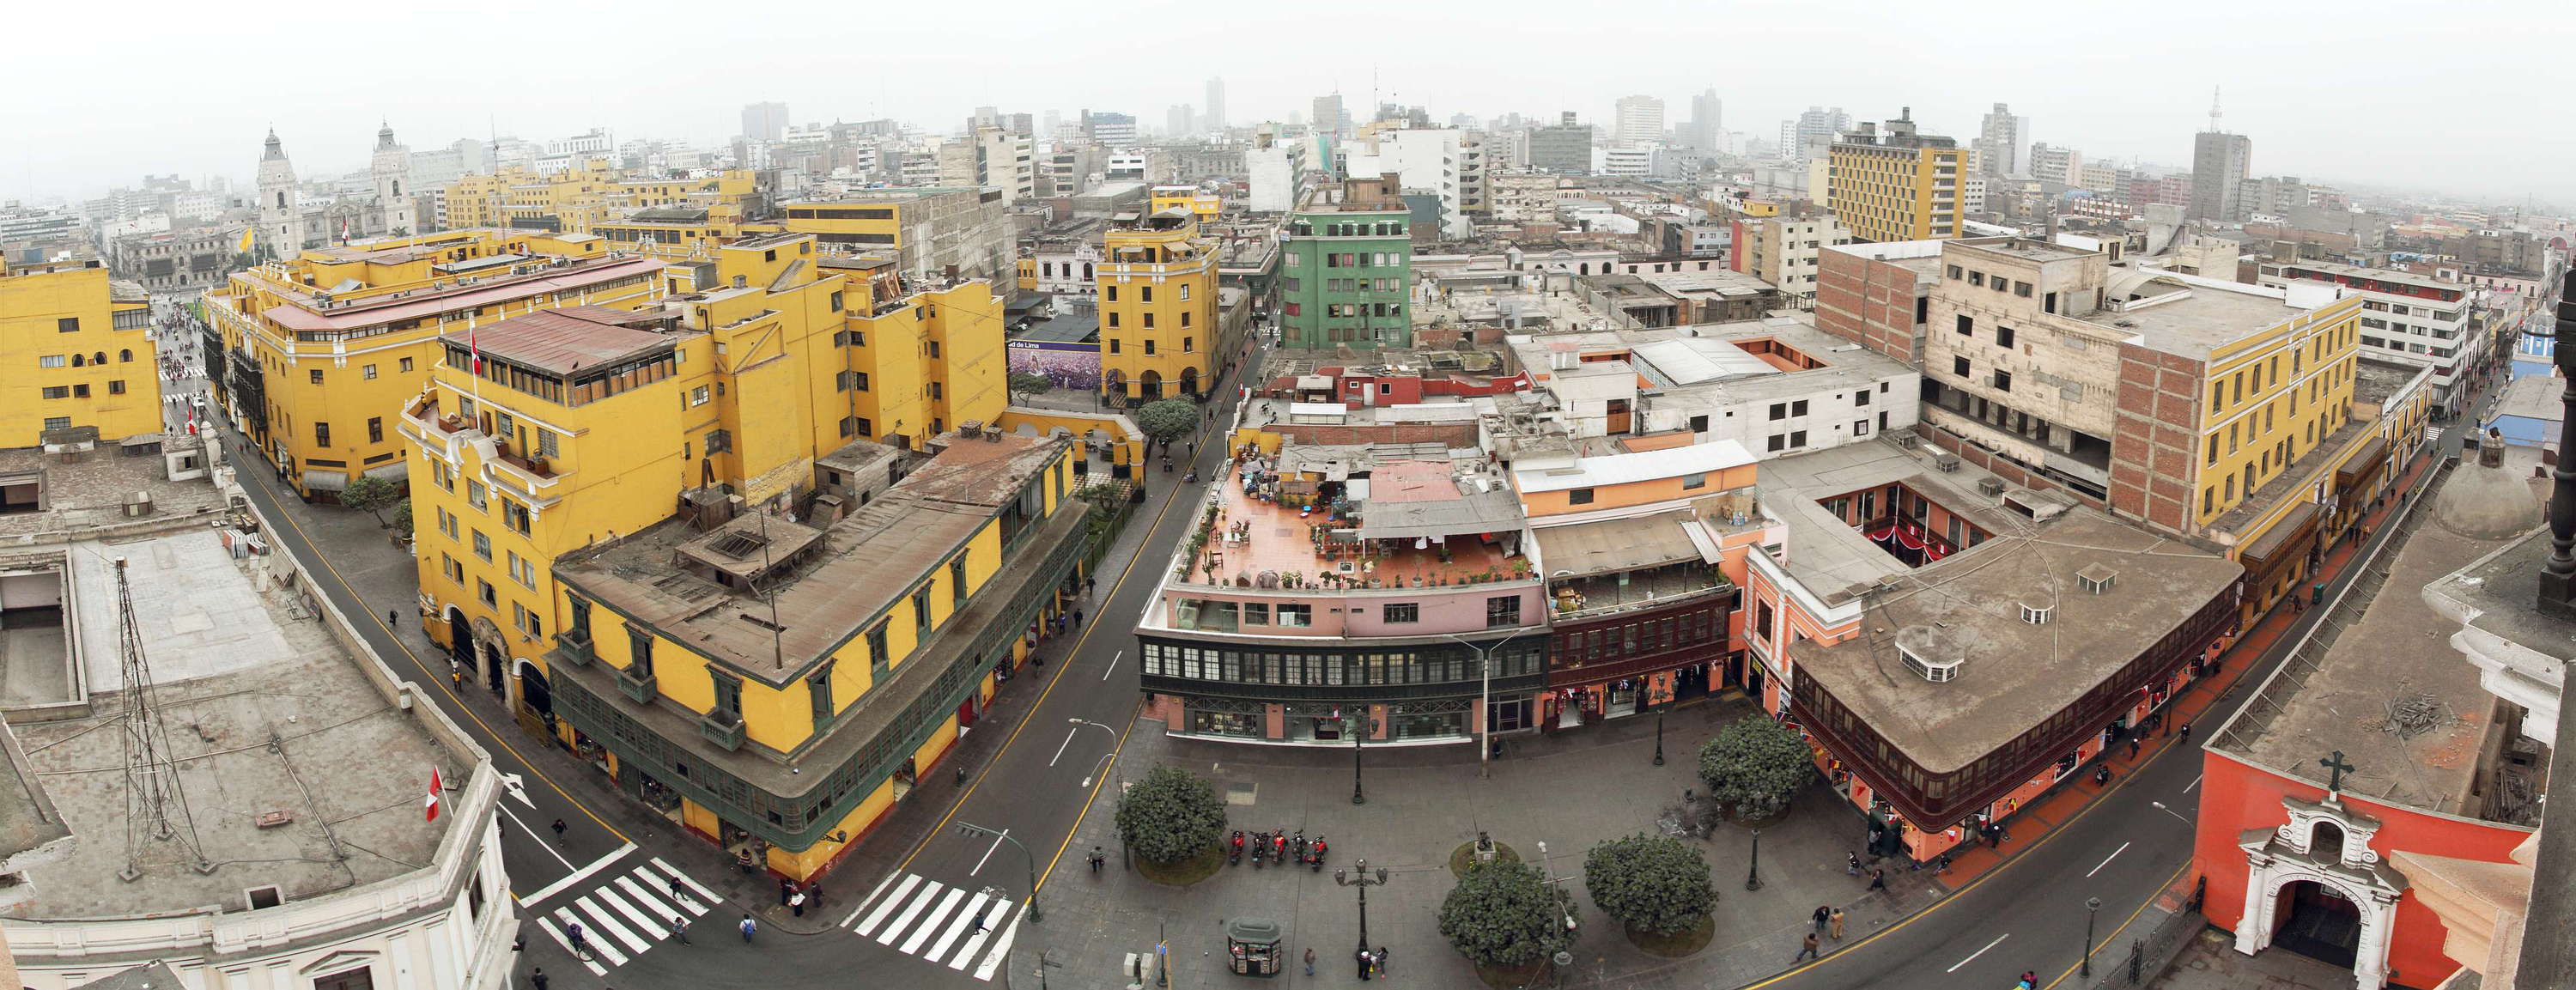 Lima | City centre